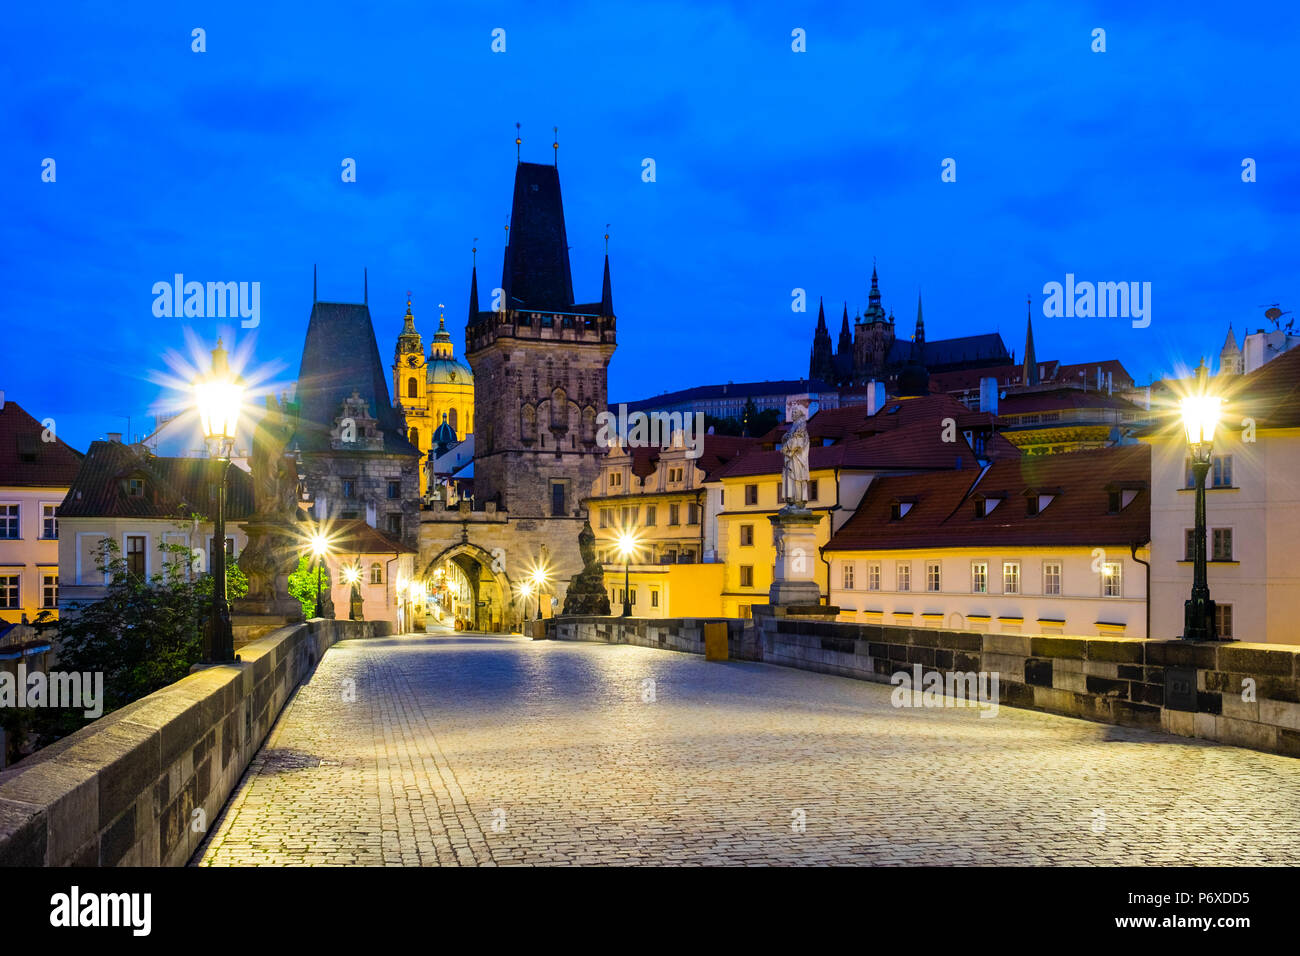 Tschechische Republik, Prag. Blick auf die Karlsbrücke, Altstädter Brückenturm und Gebäude in Mala Strana im Morgengrauen. Stockfoto